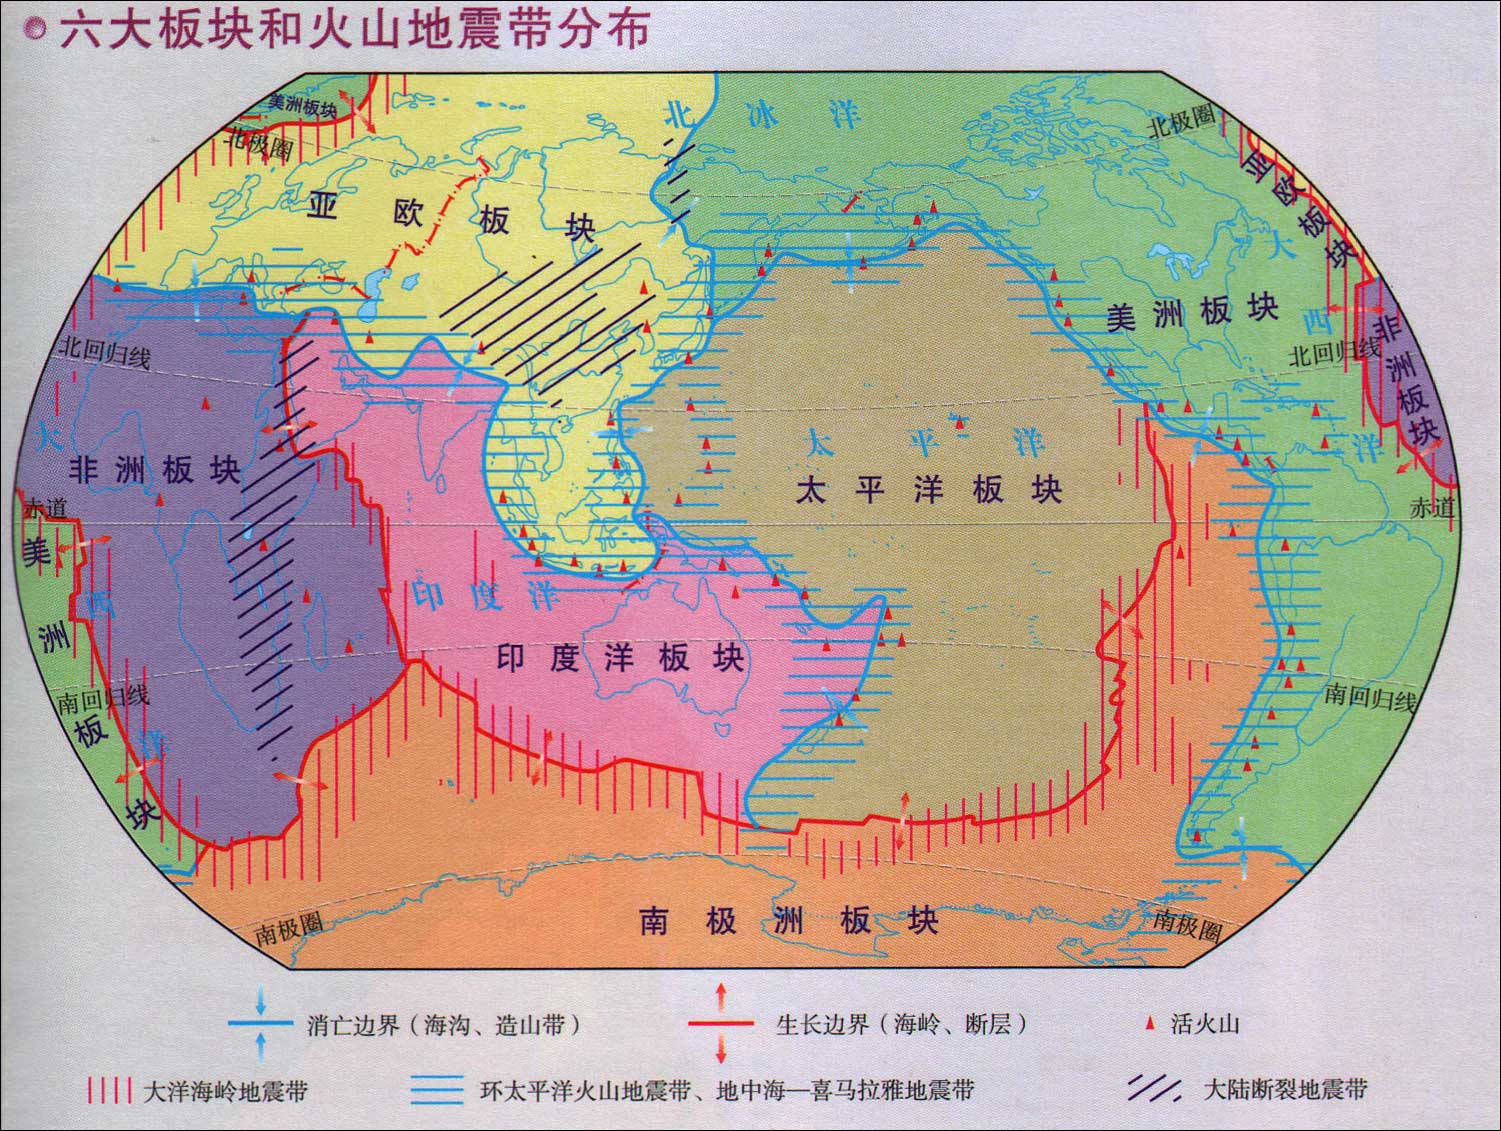 地球六大板块和火山地震带分布图